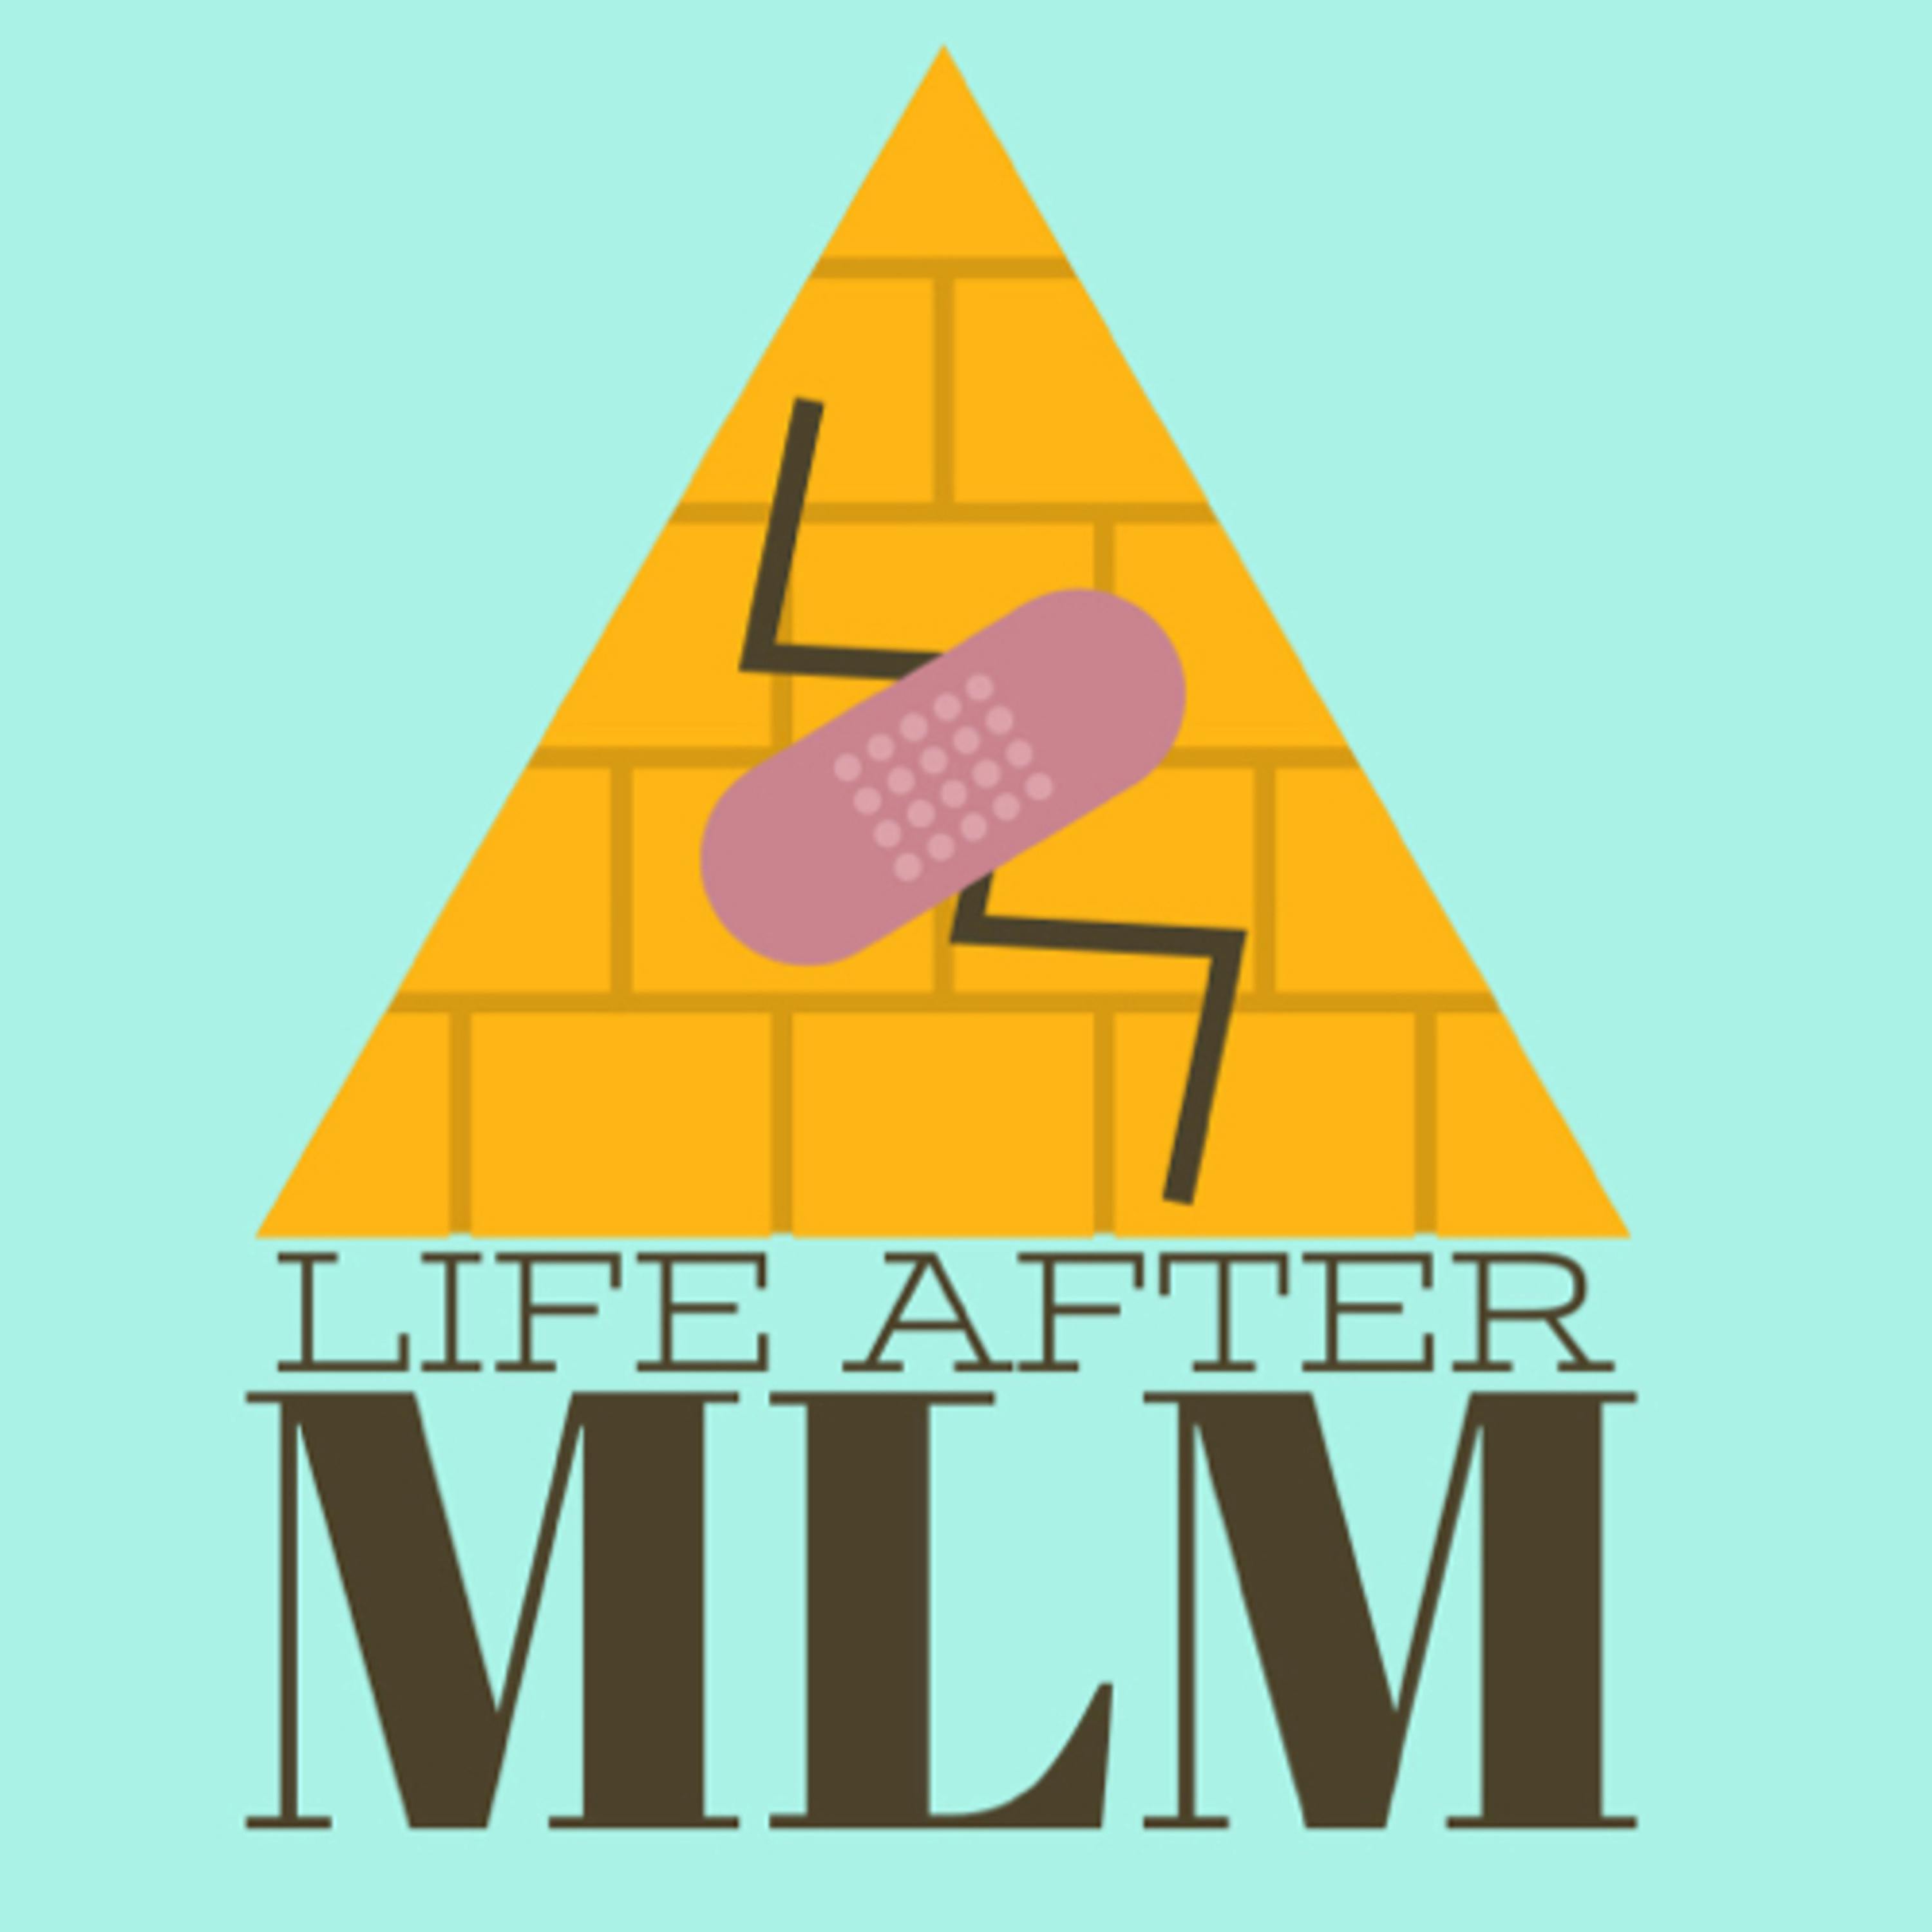 Episode 1: Roberta Blevins - Life After MLM